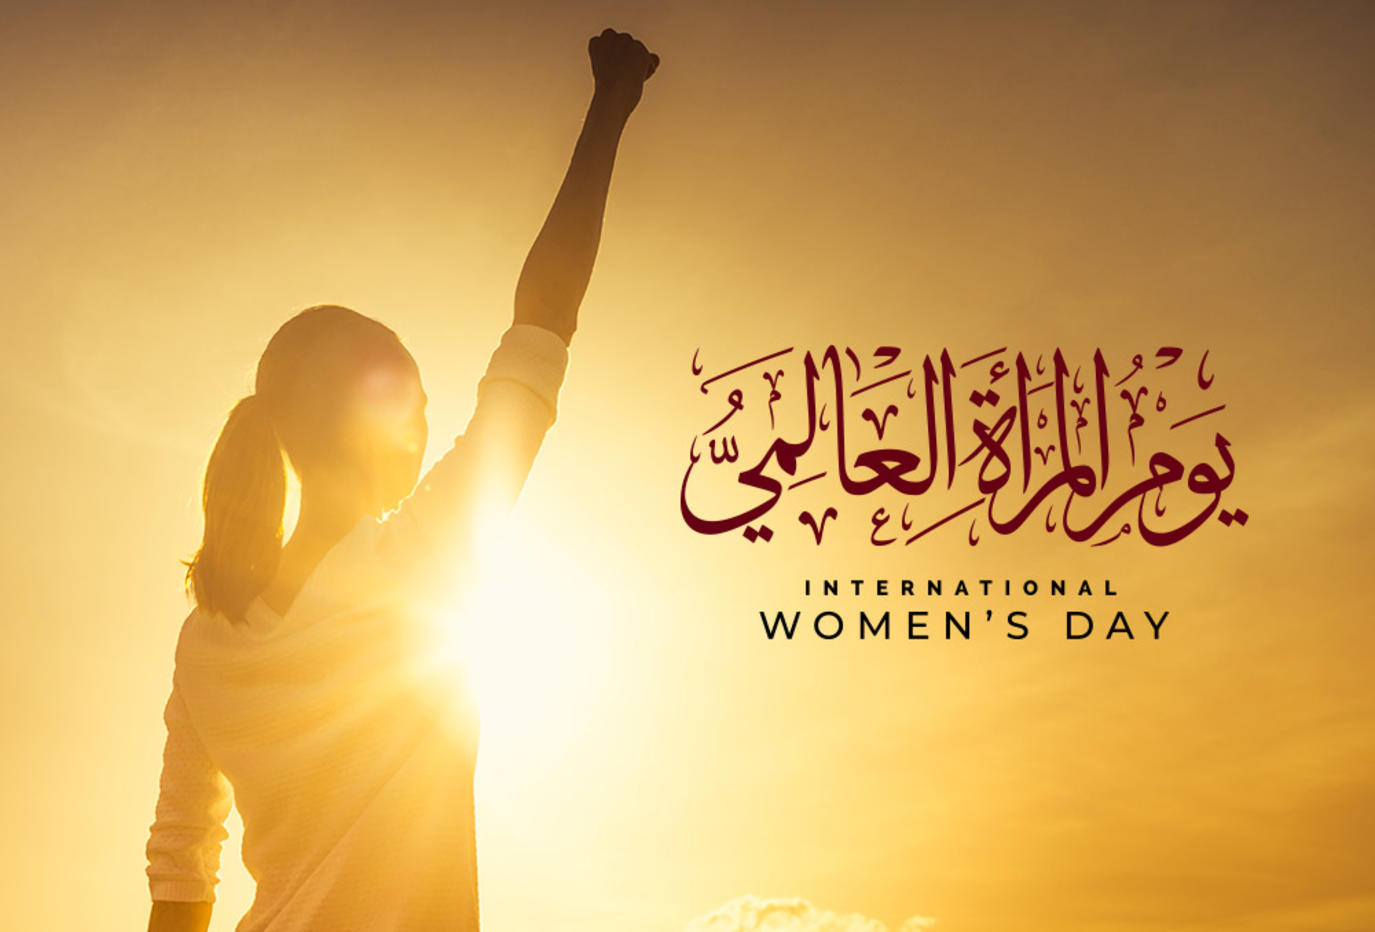 ما هو اول عام ليوم المرأة في الشرق الاوسط